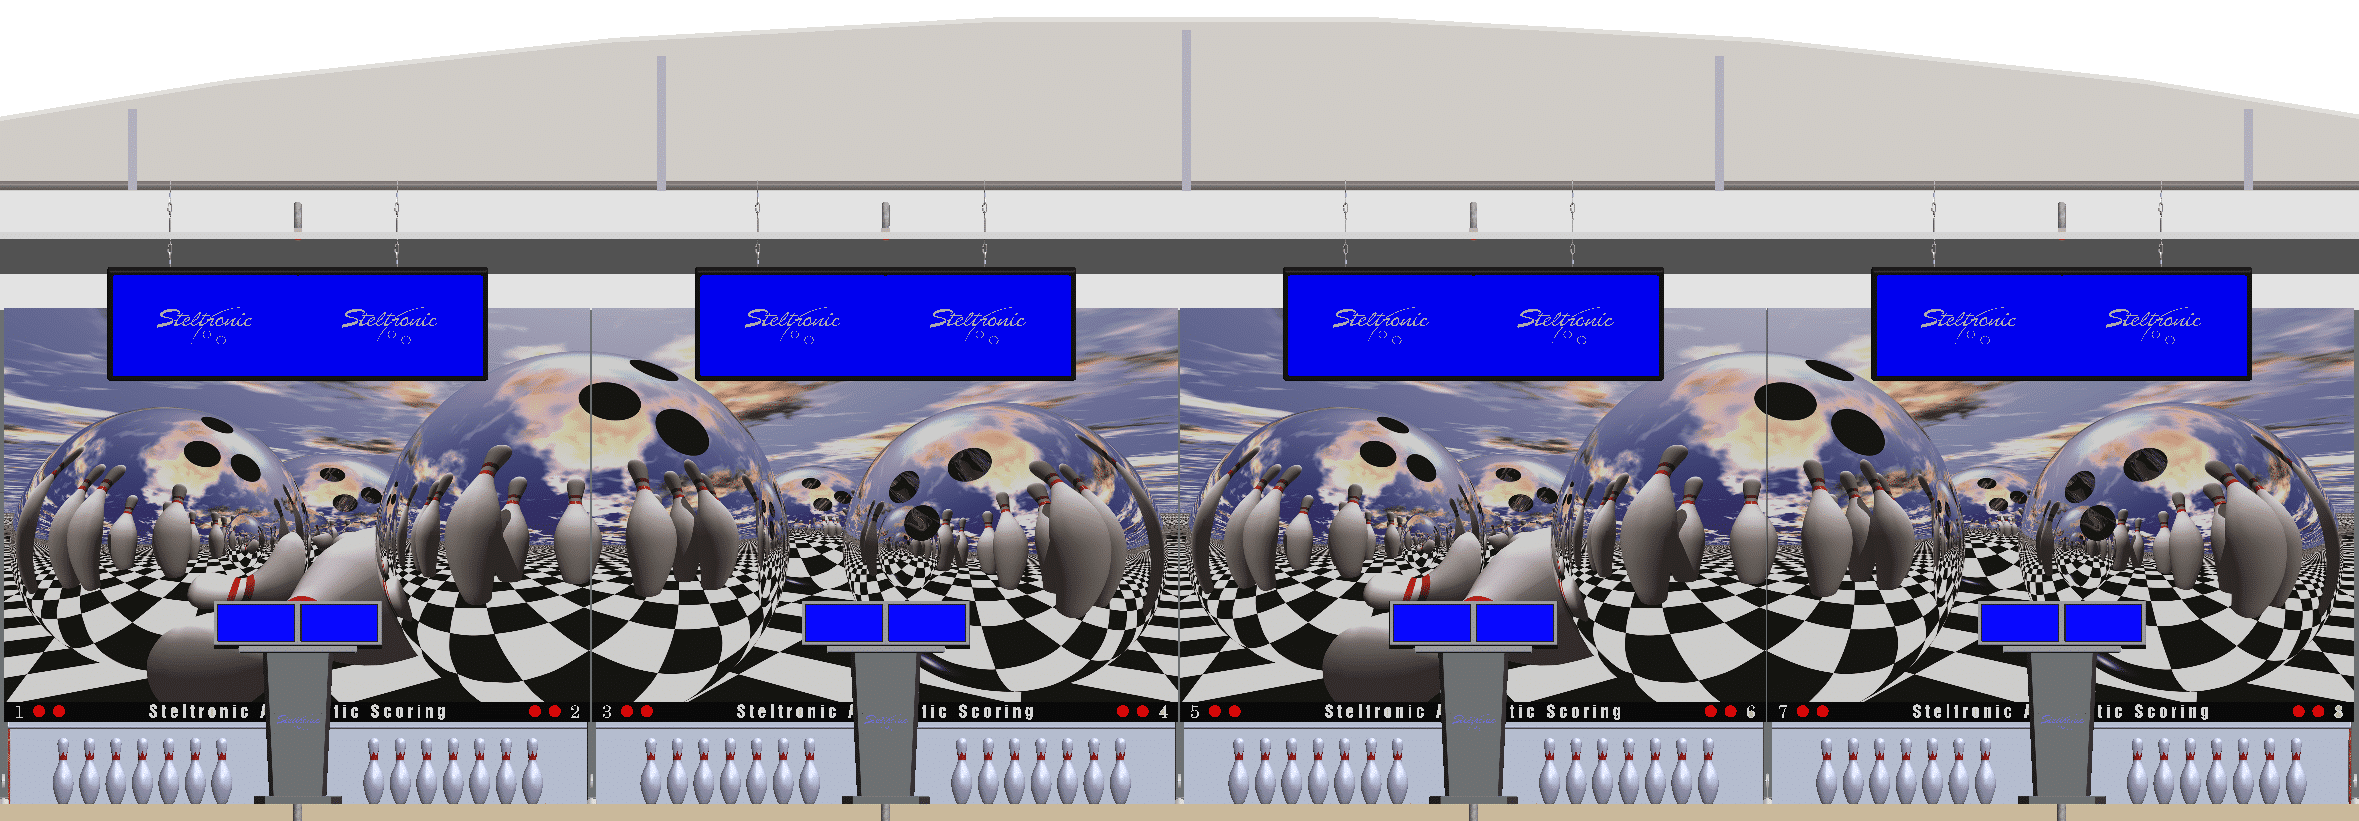 Steltronic Bowling Center 3D Model